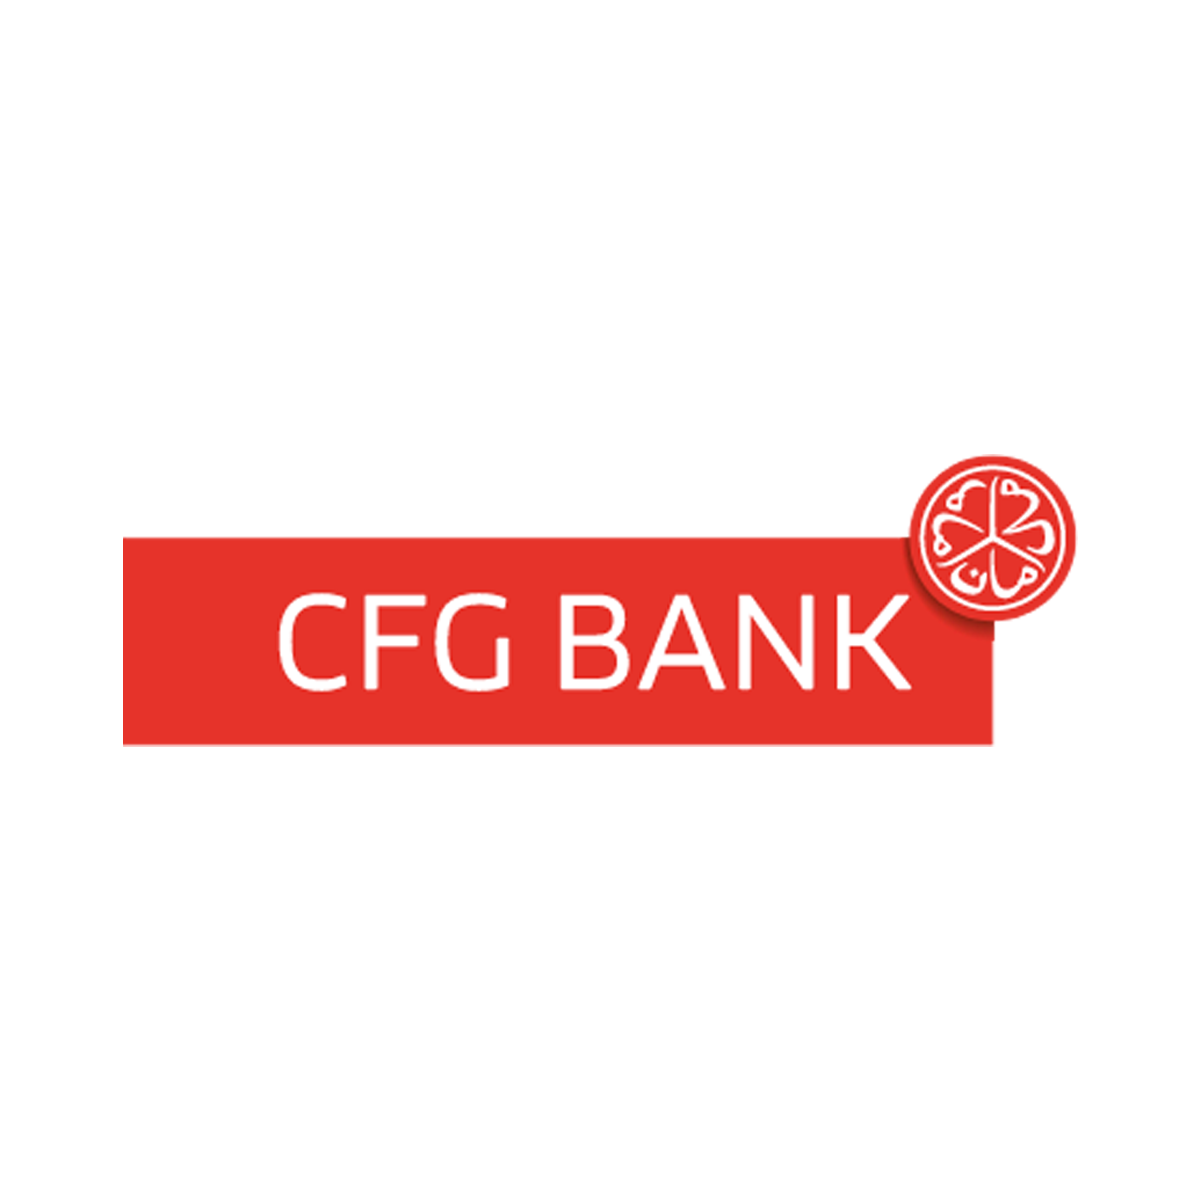 CFG BANK Mabanque.ma